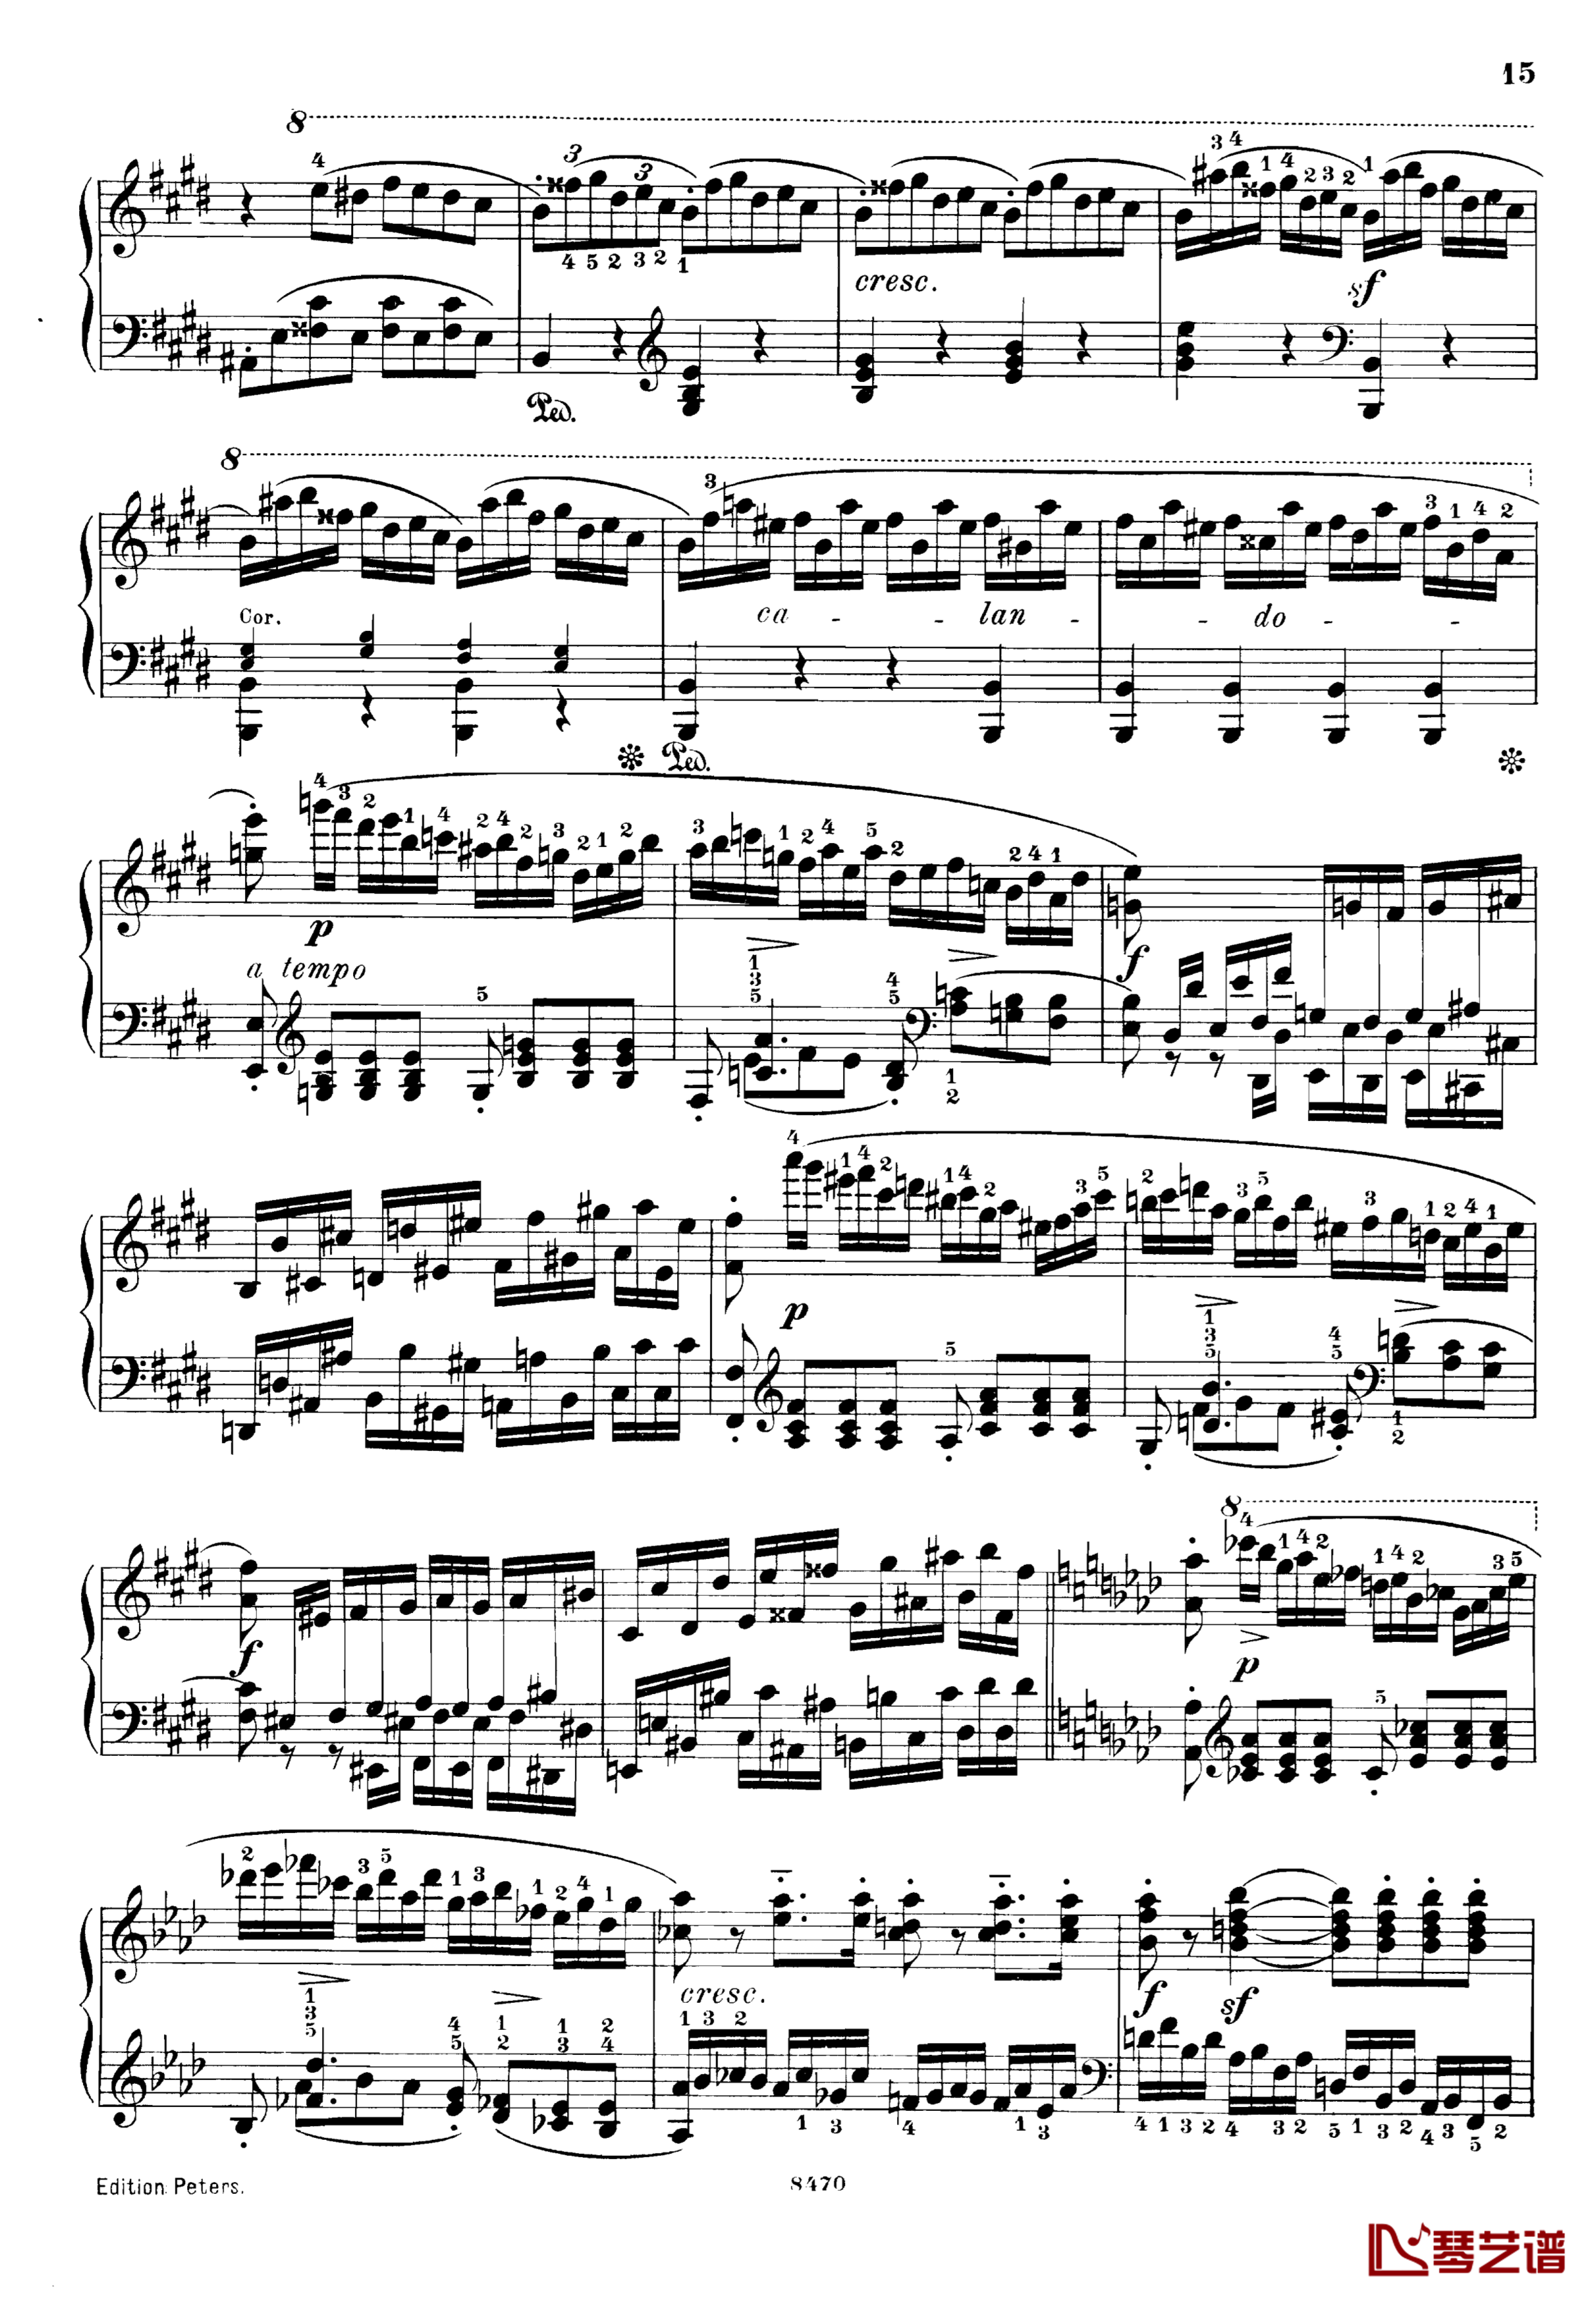 升c小调第三钢琴协奏曲Op.55钢琴谱-克里斯蒂安-里斯15